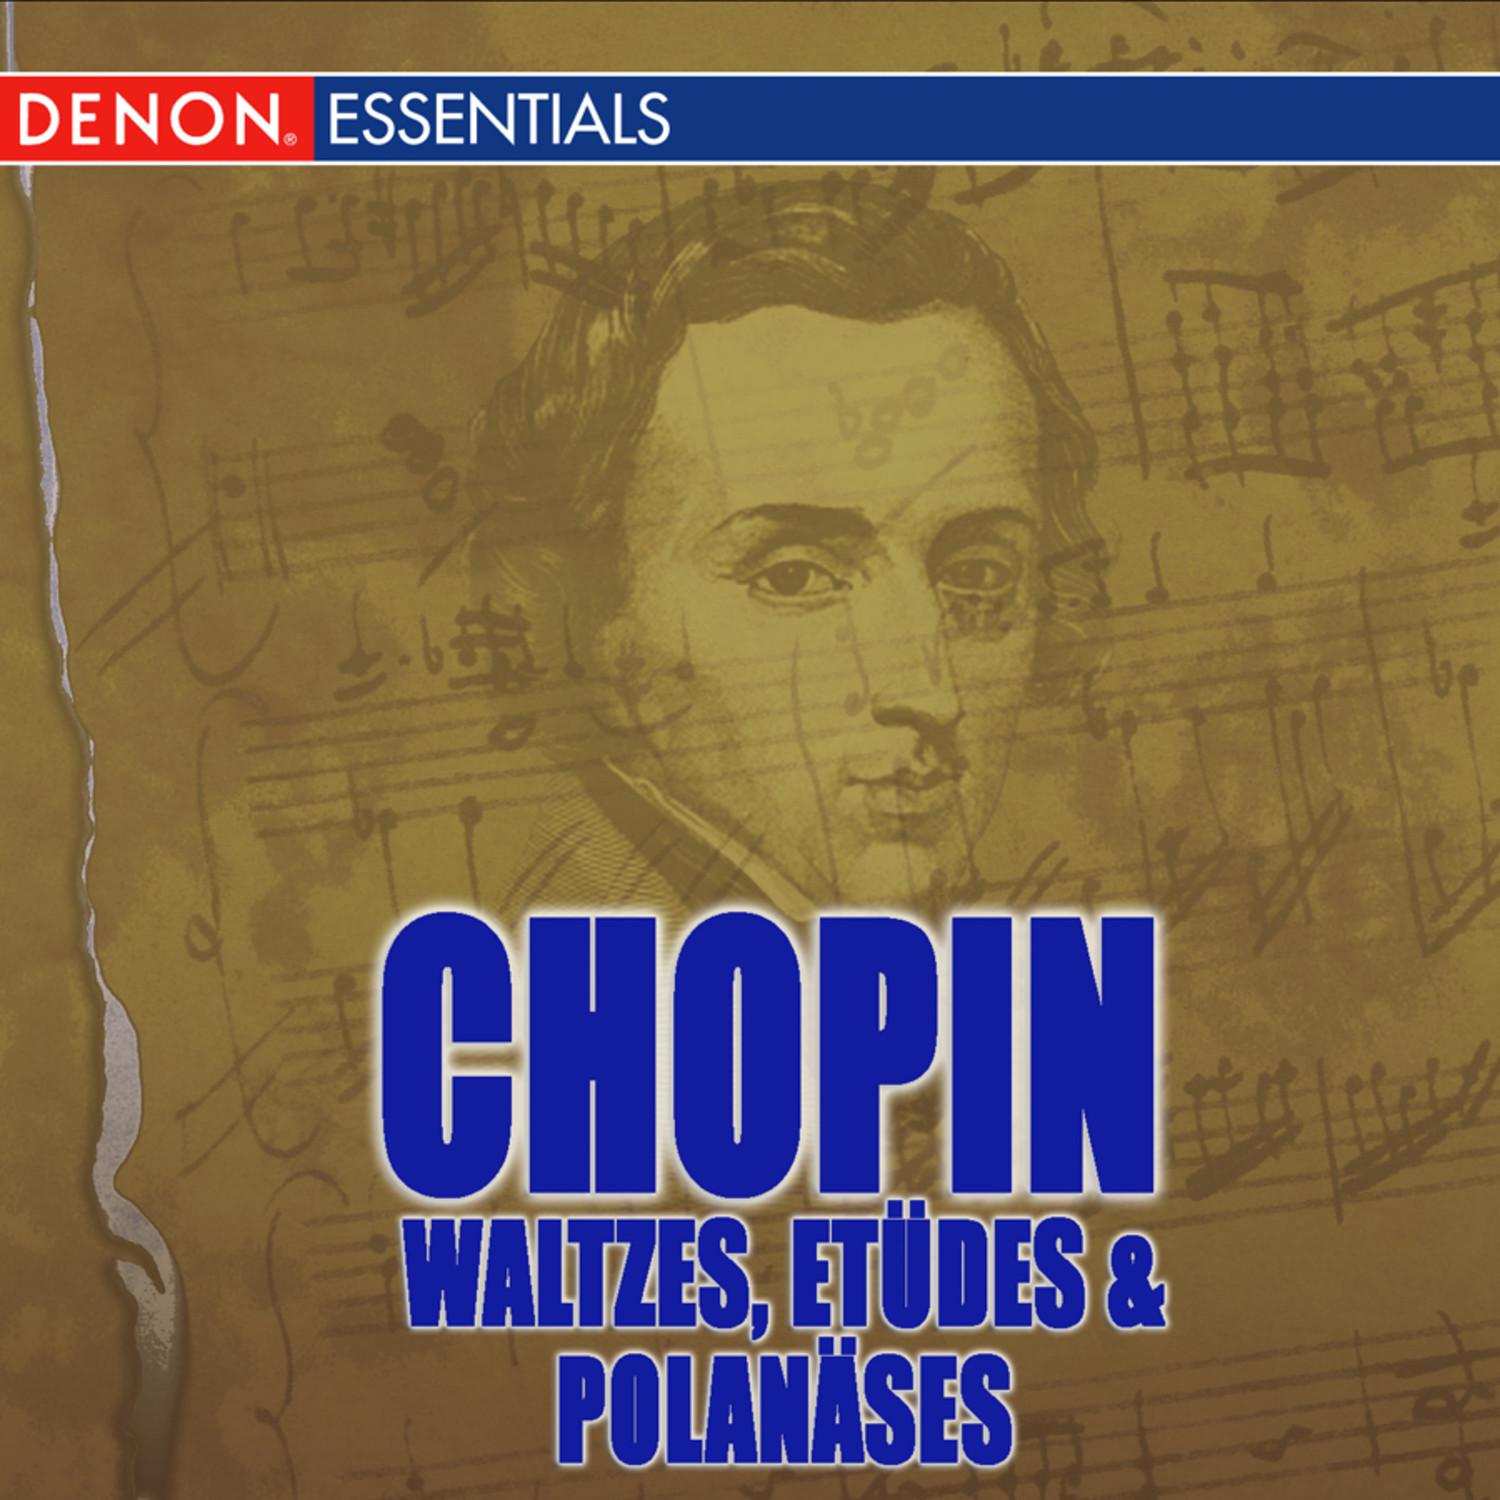 Chopin Waltz Op. 64 in D-Flat Major: I.